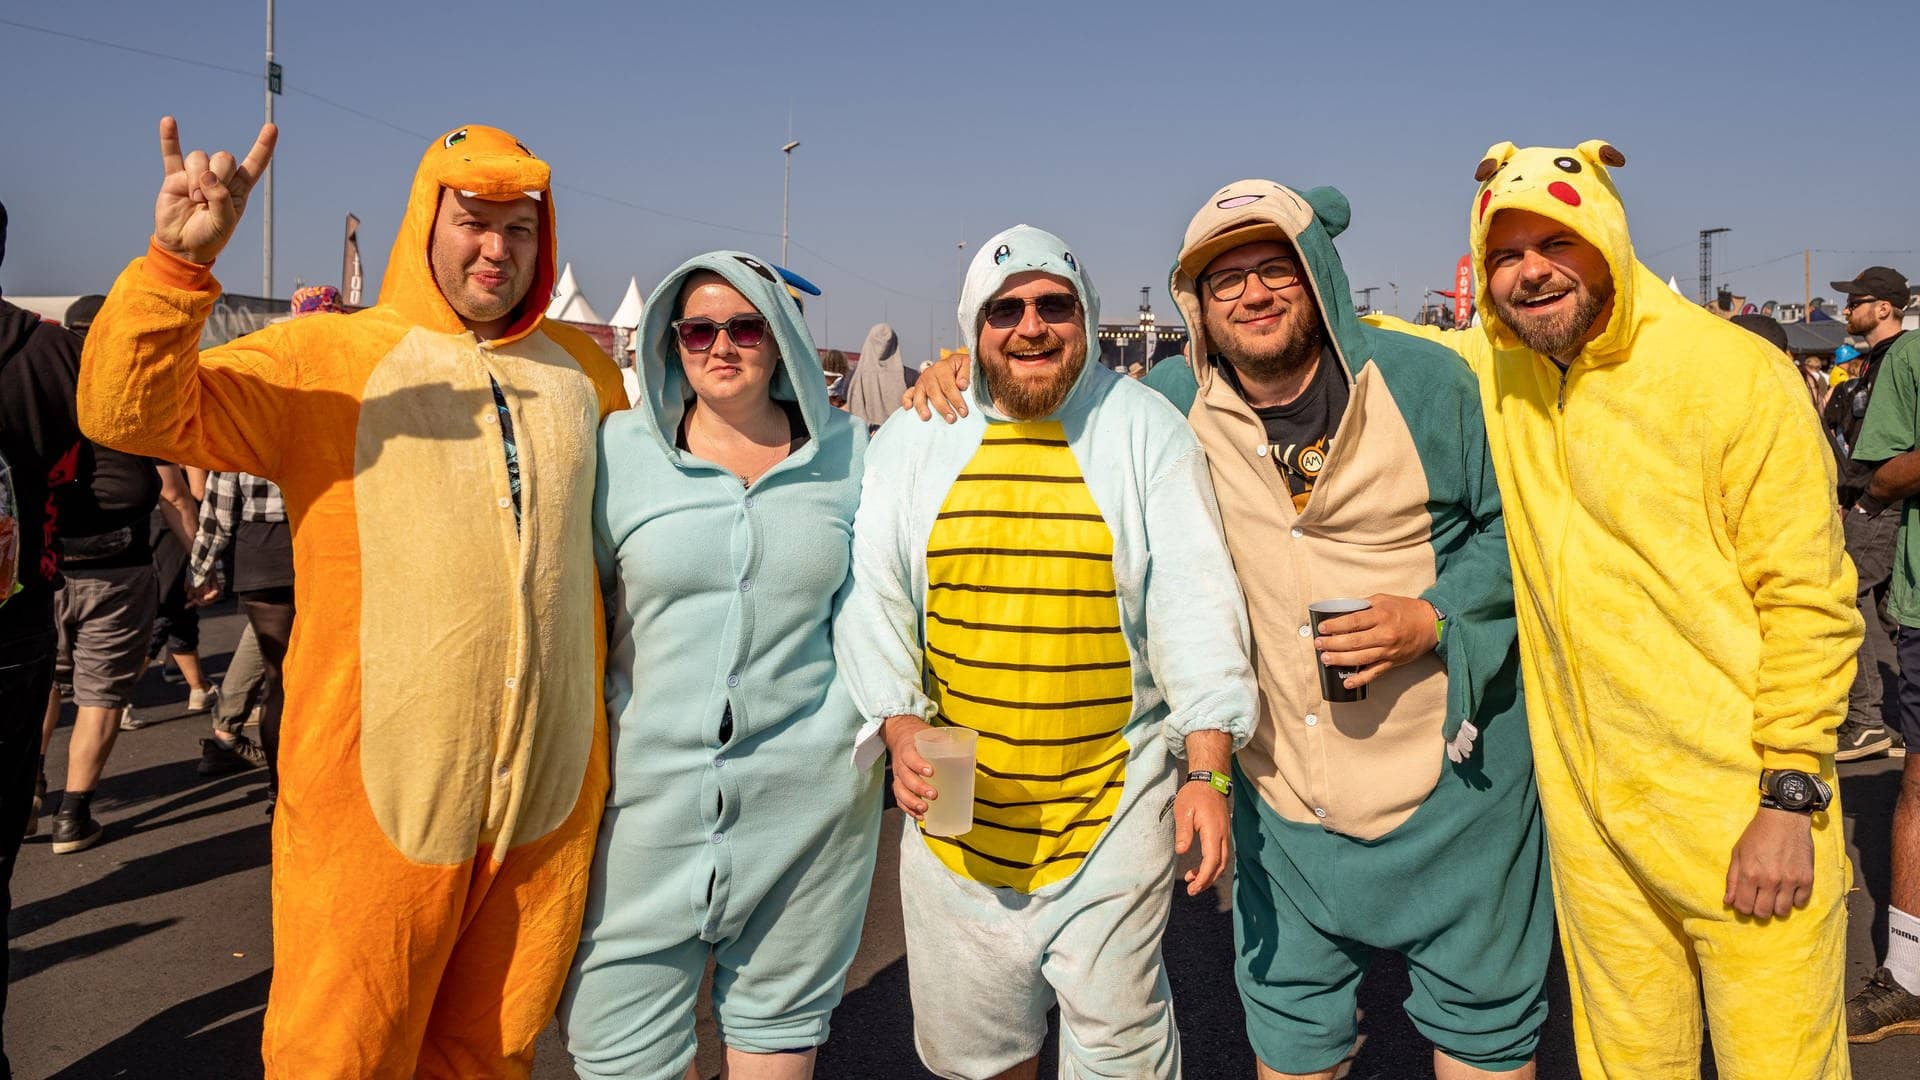 Fünf Besucher in Pokemon Kostümen (Foto: SWR3, SWR3 / Ronny Krautz)